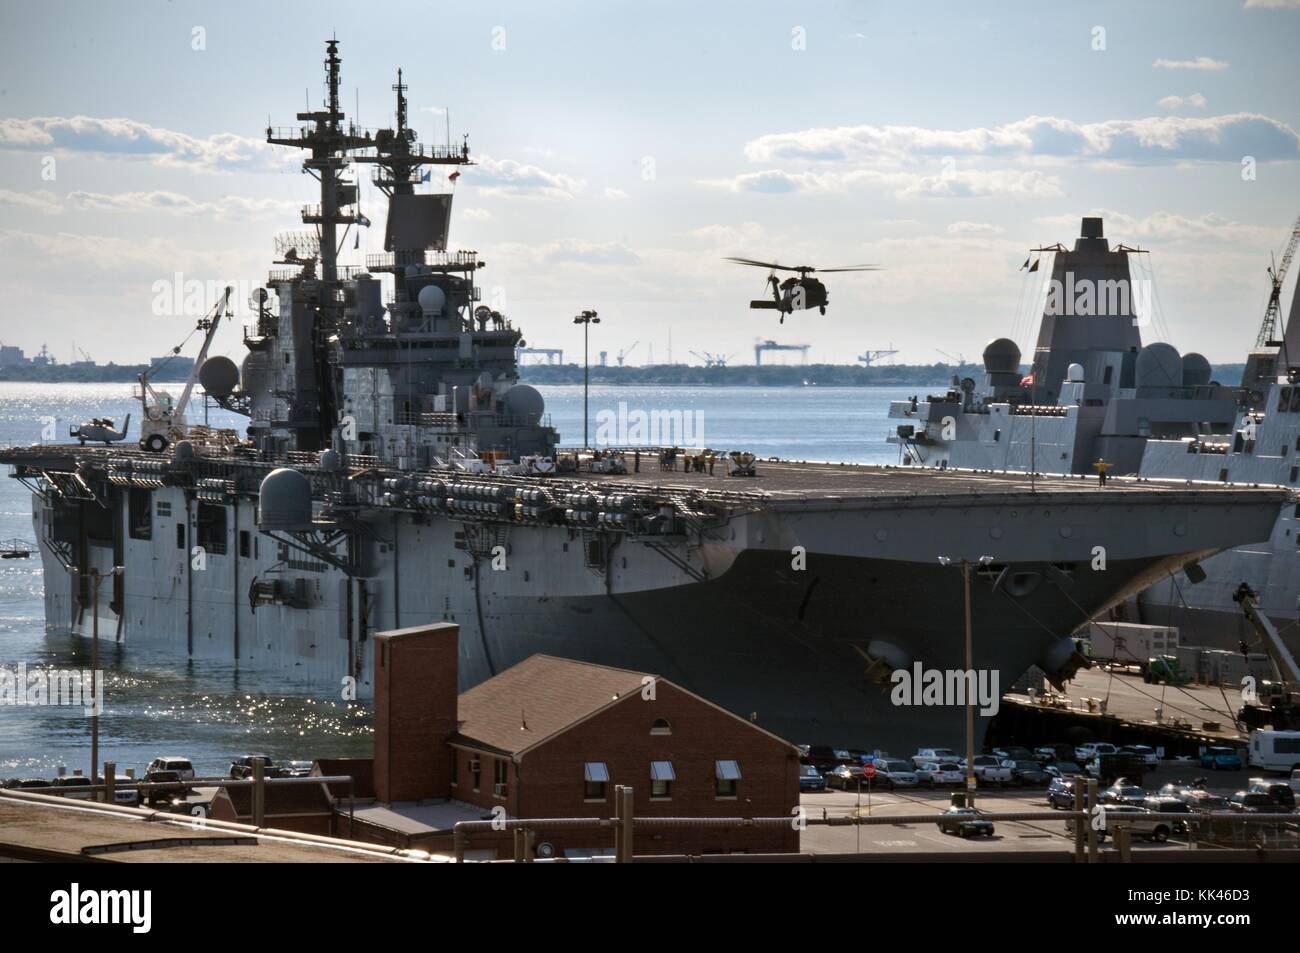 Un elicottero MH-60S Sea Hawk atterra sul ponte di volo della nave d'assalto anfibia USS Kearsarge LHD 3 mentre si svolgono operazioni di volo nel porto, Norfolk, Virginia, 2012. Immagine gentilmente concessa da Mass Communication Specialist 3a Classe Corbin Shea/US Navy. Foto Stock